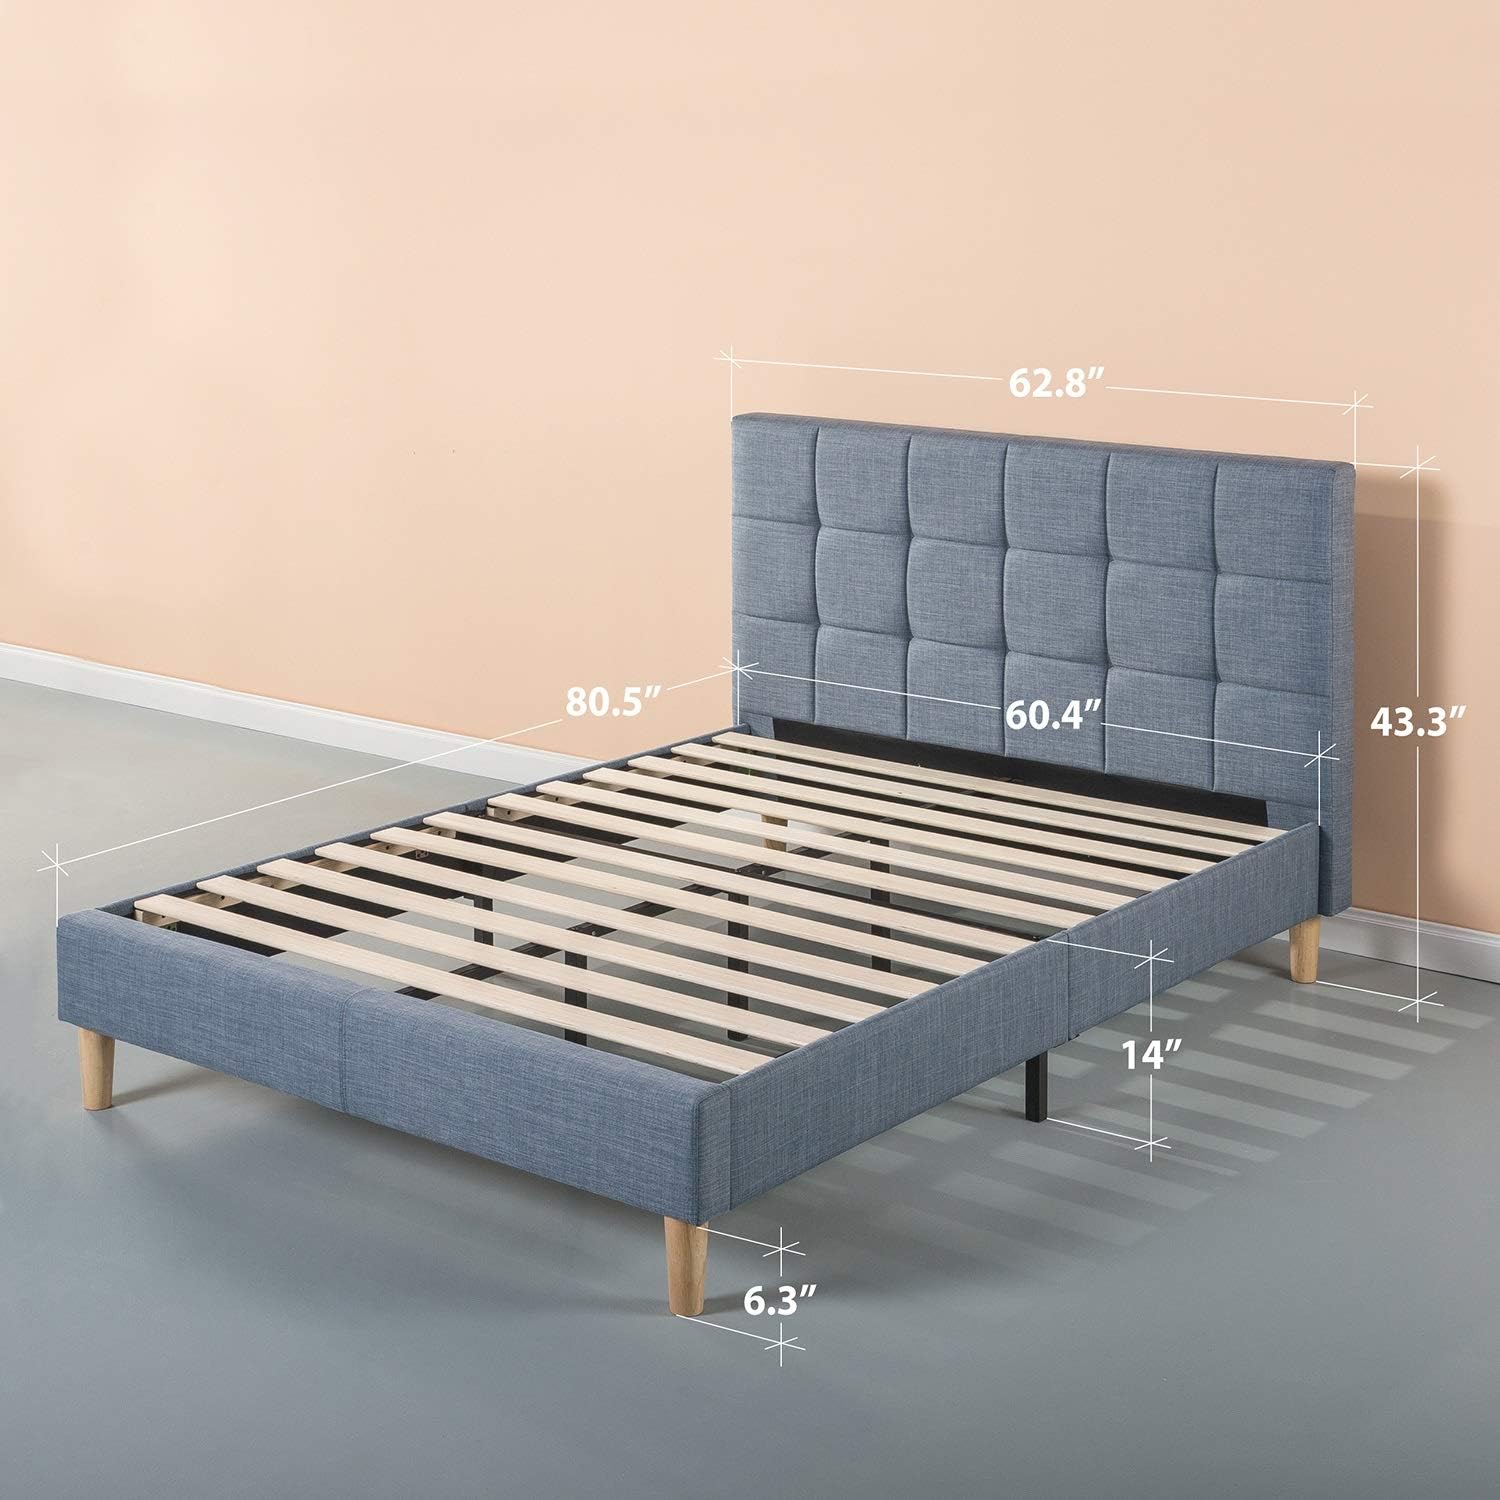 ZINUS Lottie Upholstered Platform Bed Frame, Blue Slate, Queen - $140